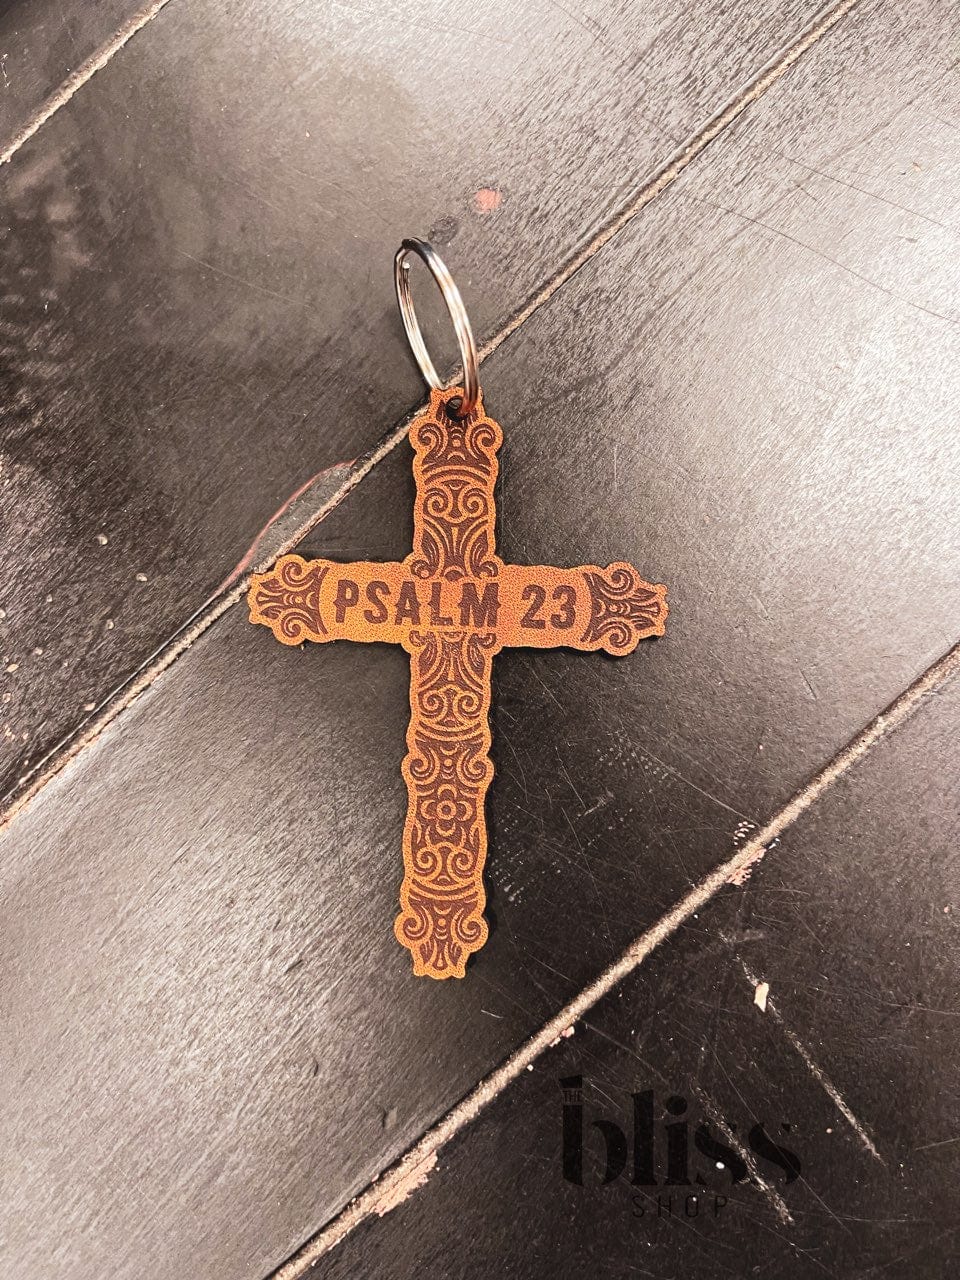 Psalm 23 Keychain